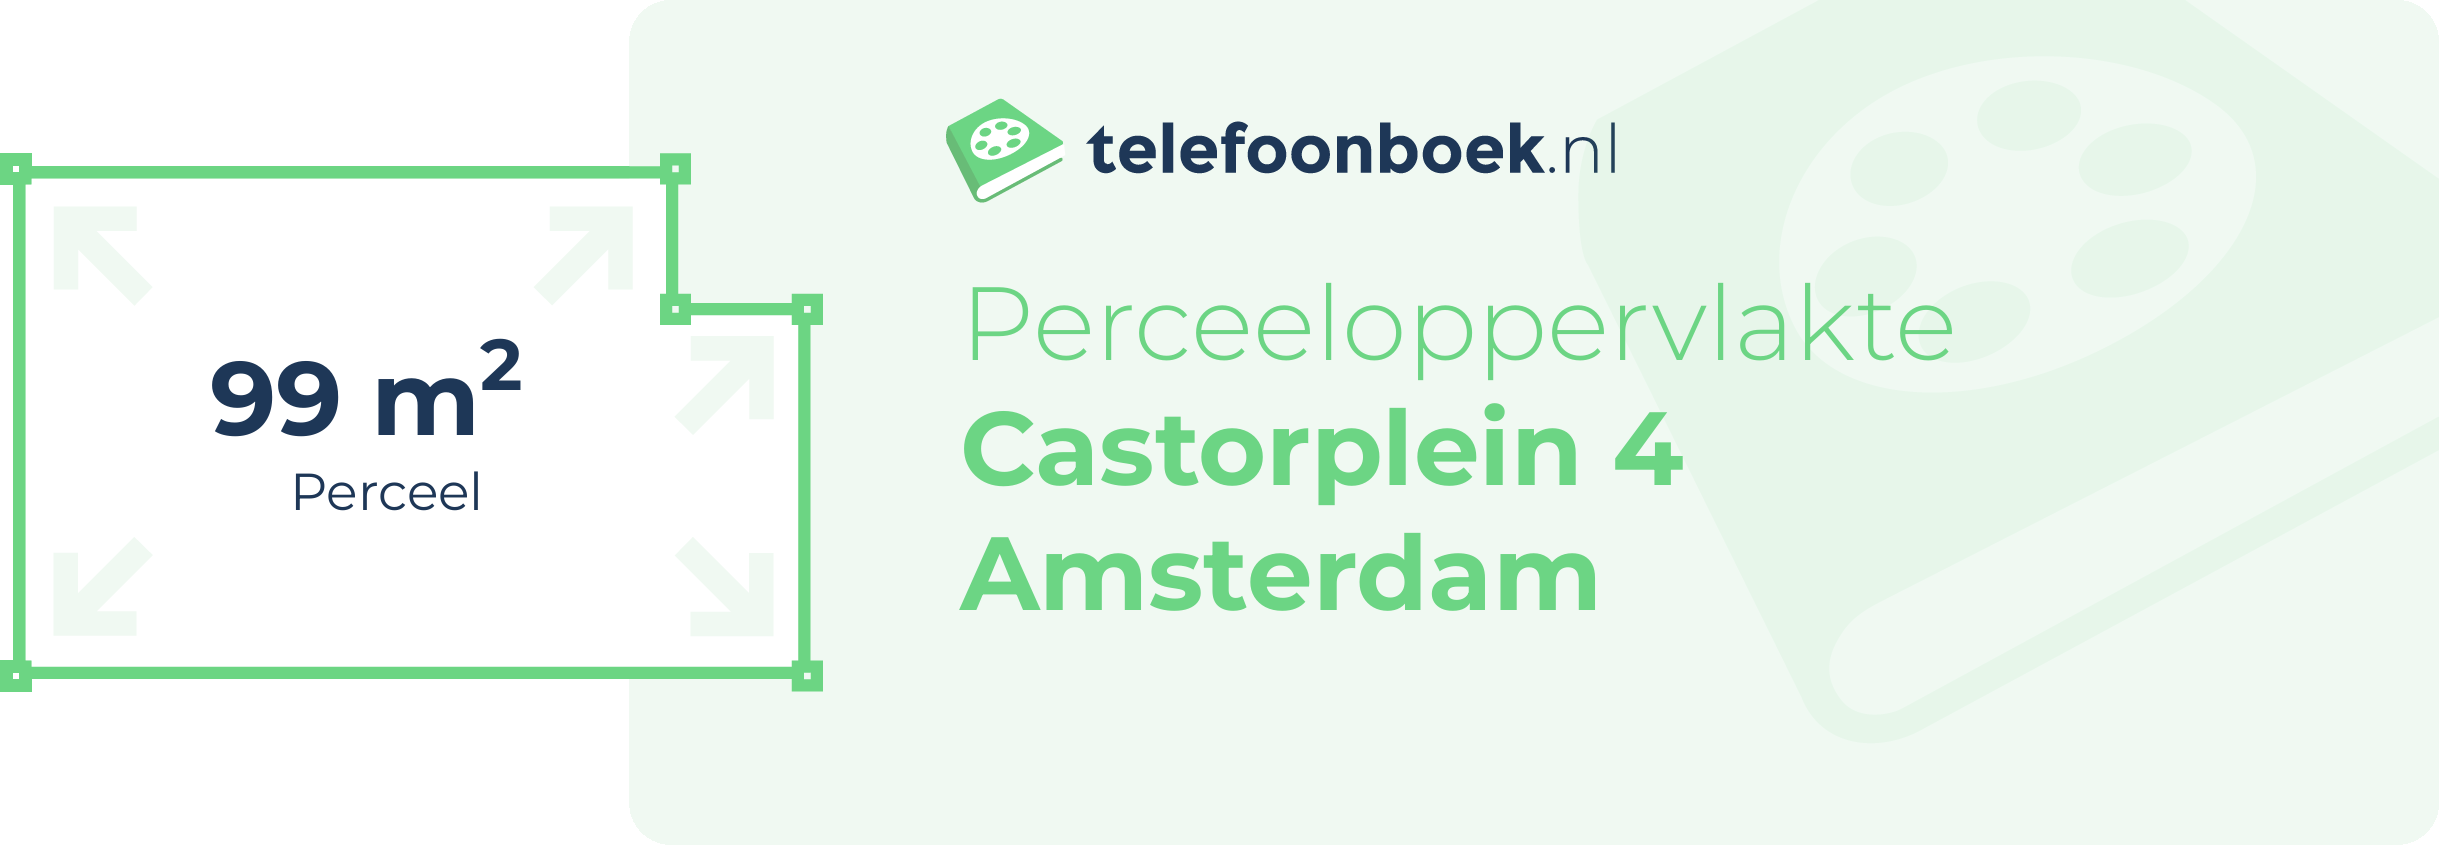 Perceeloppervlakte Castorplein 4 Amsterdam